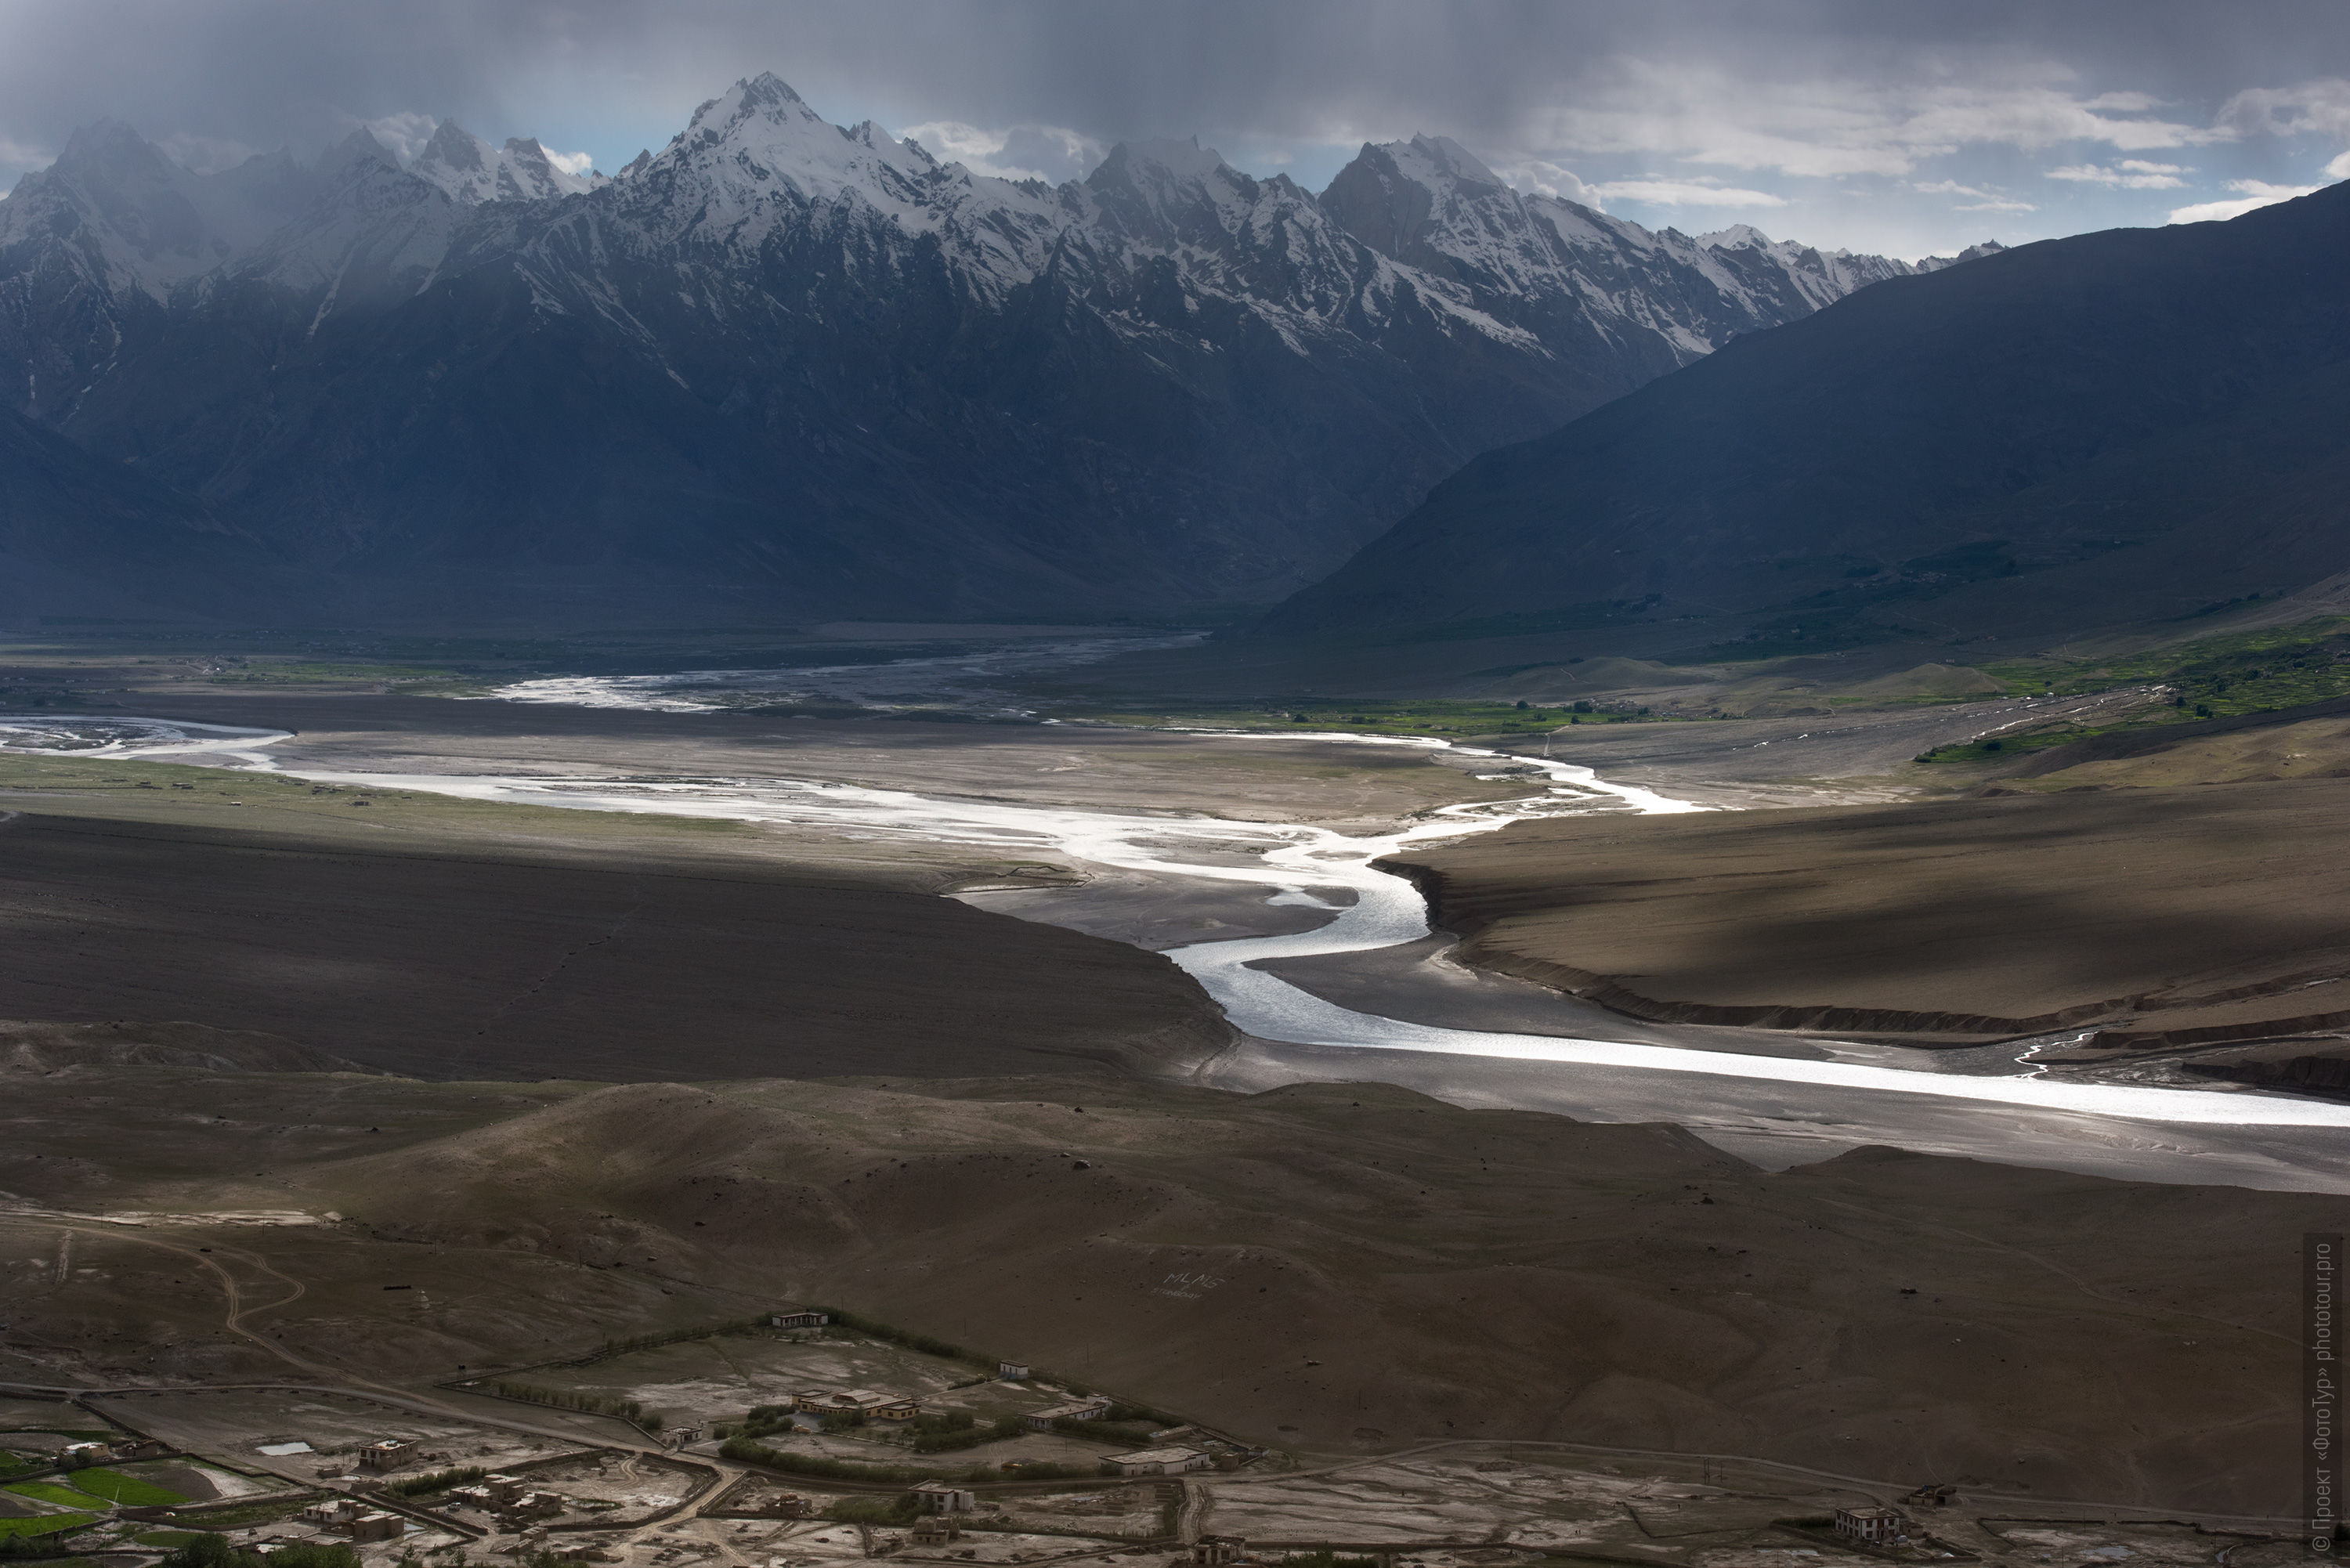 Слияние рек Дода и Лунгнак в реку Занскар, Гималаи, Северная Индия.